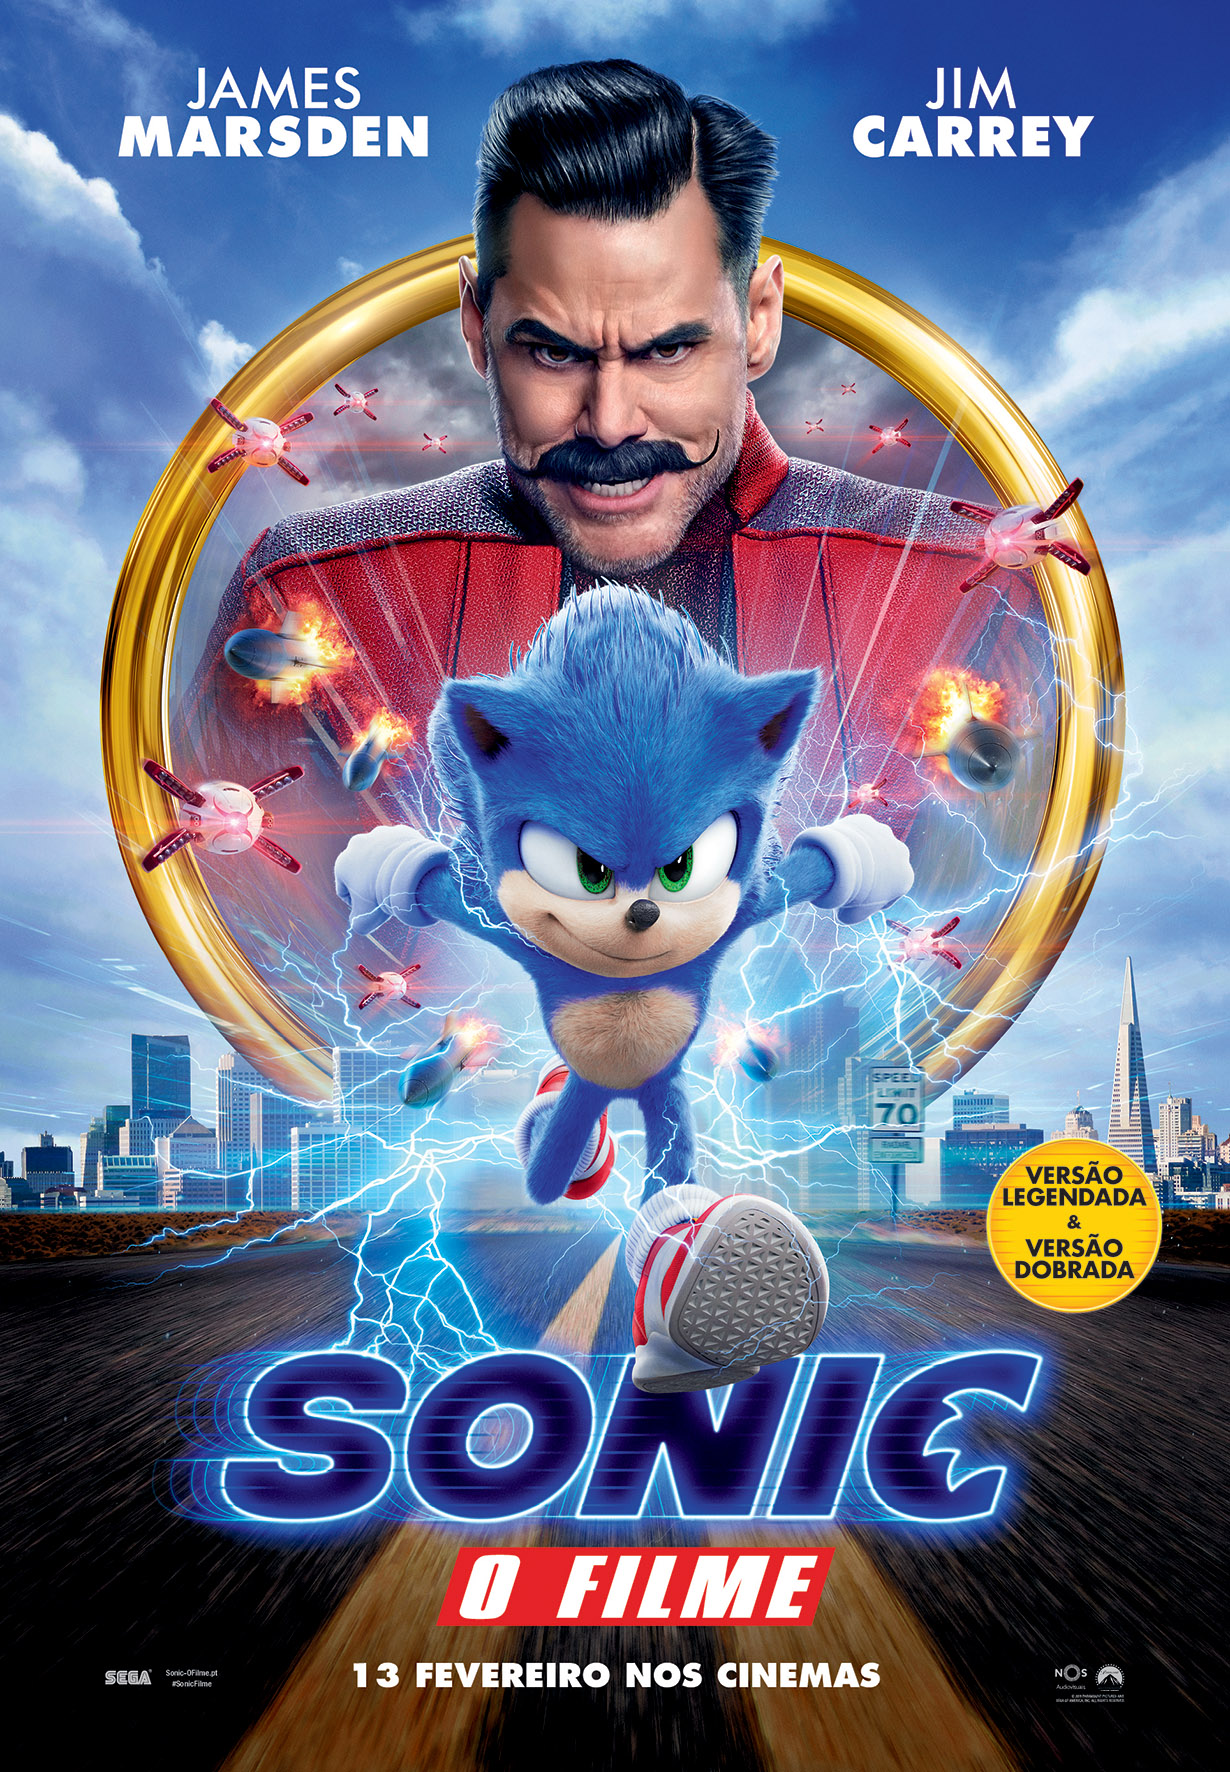 Sonic: O Filme - Desciclopédia